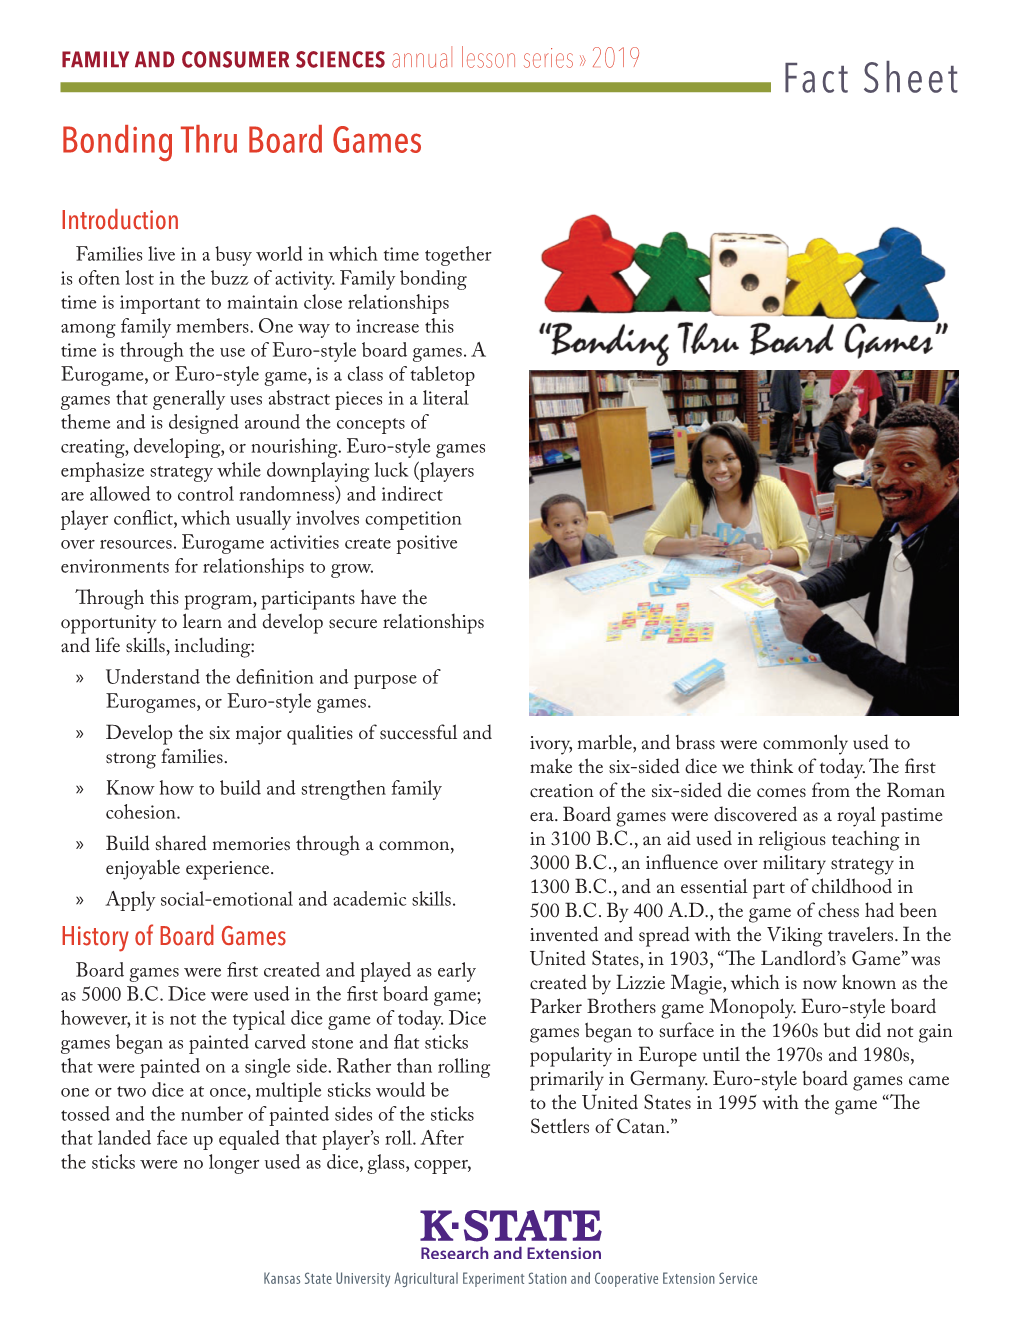 MF3401 Bonding Thru Board Games, Fact Sheet